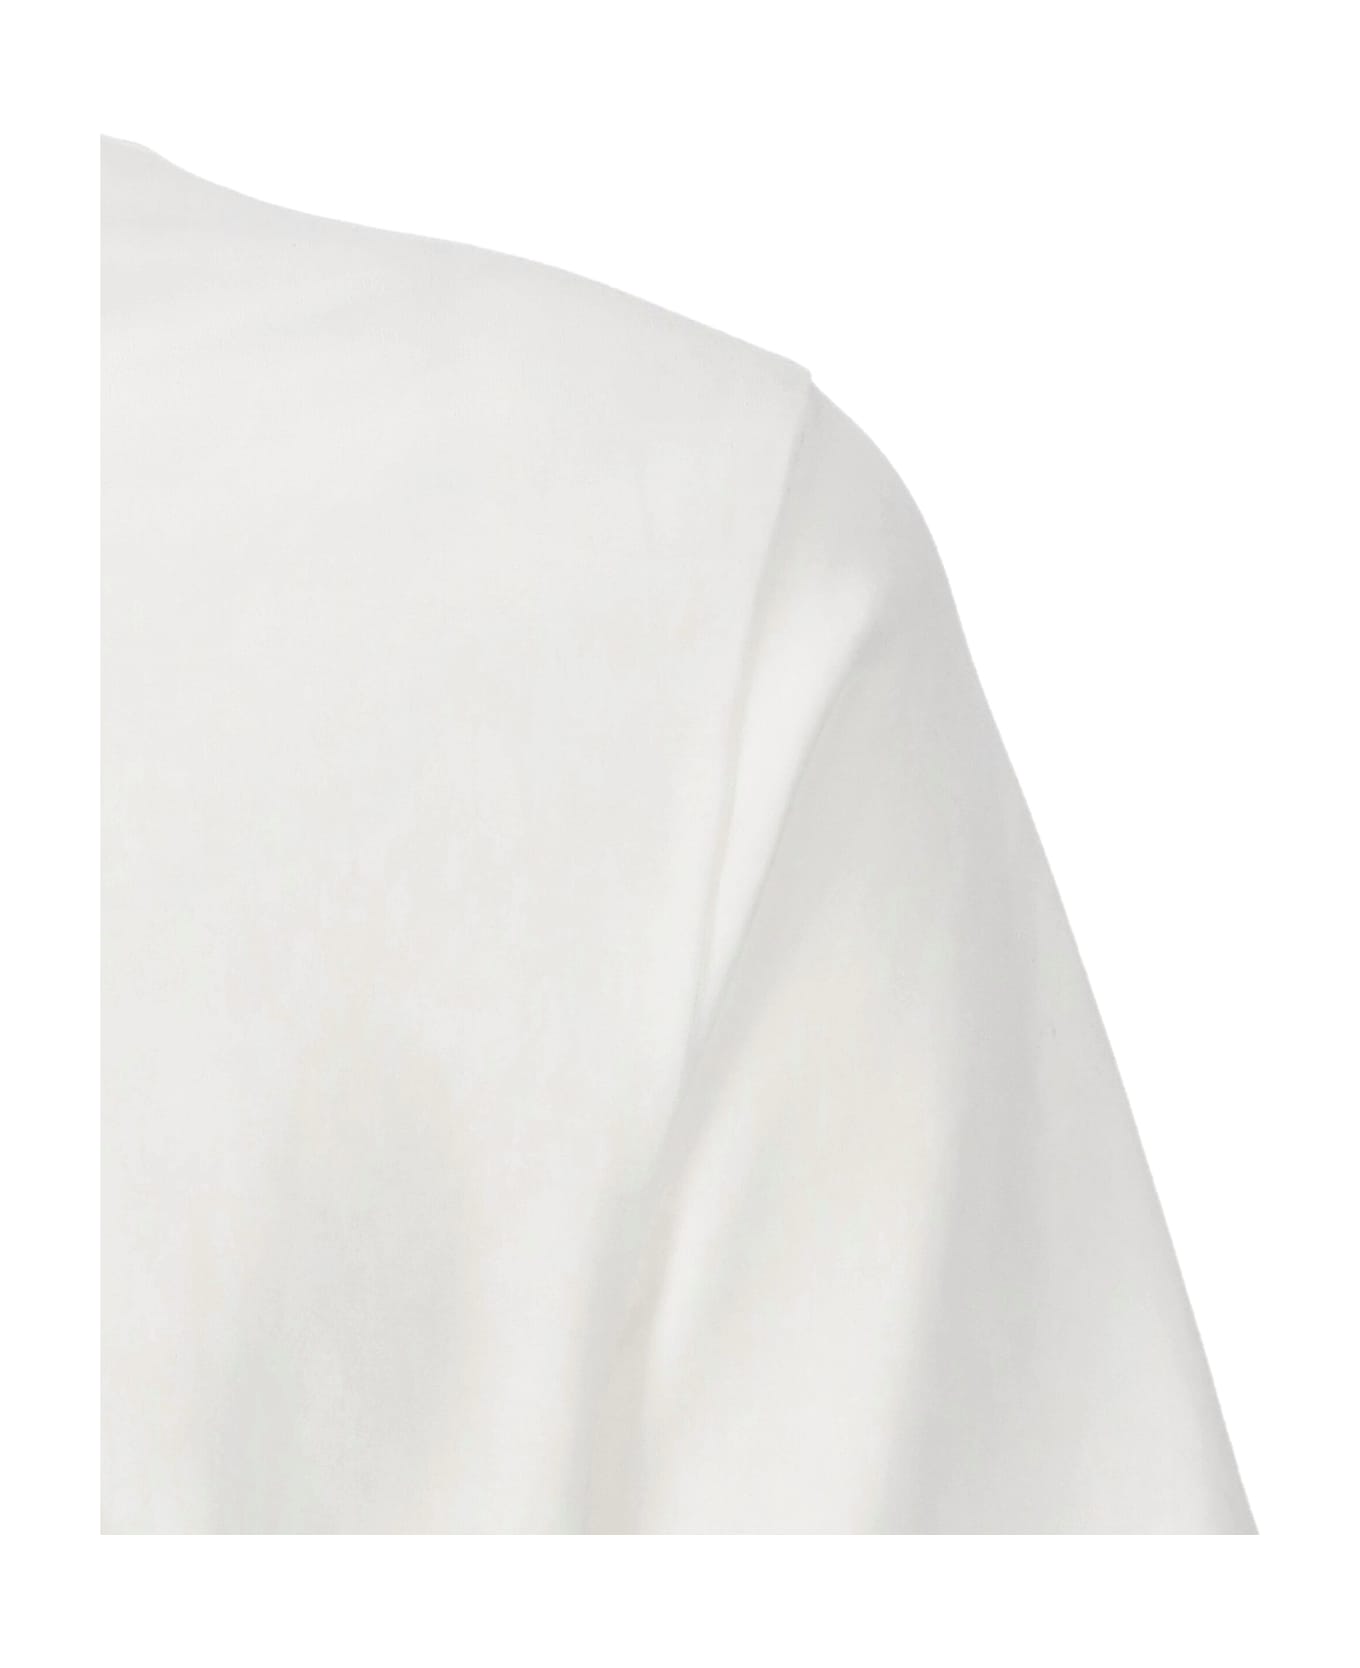 Hugo Boss Thompson 211 T-shirt - White